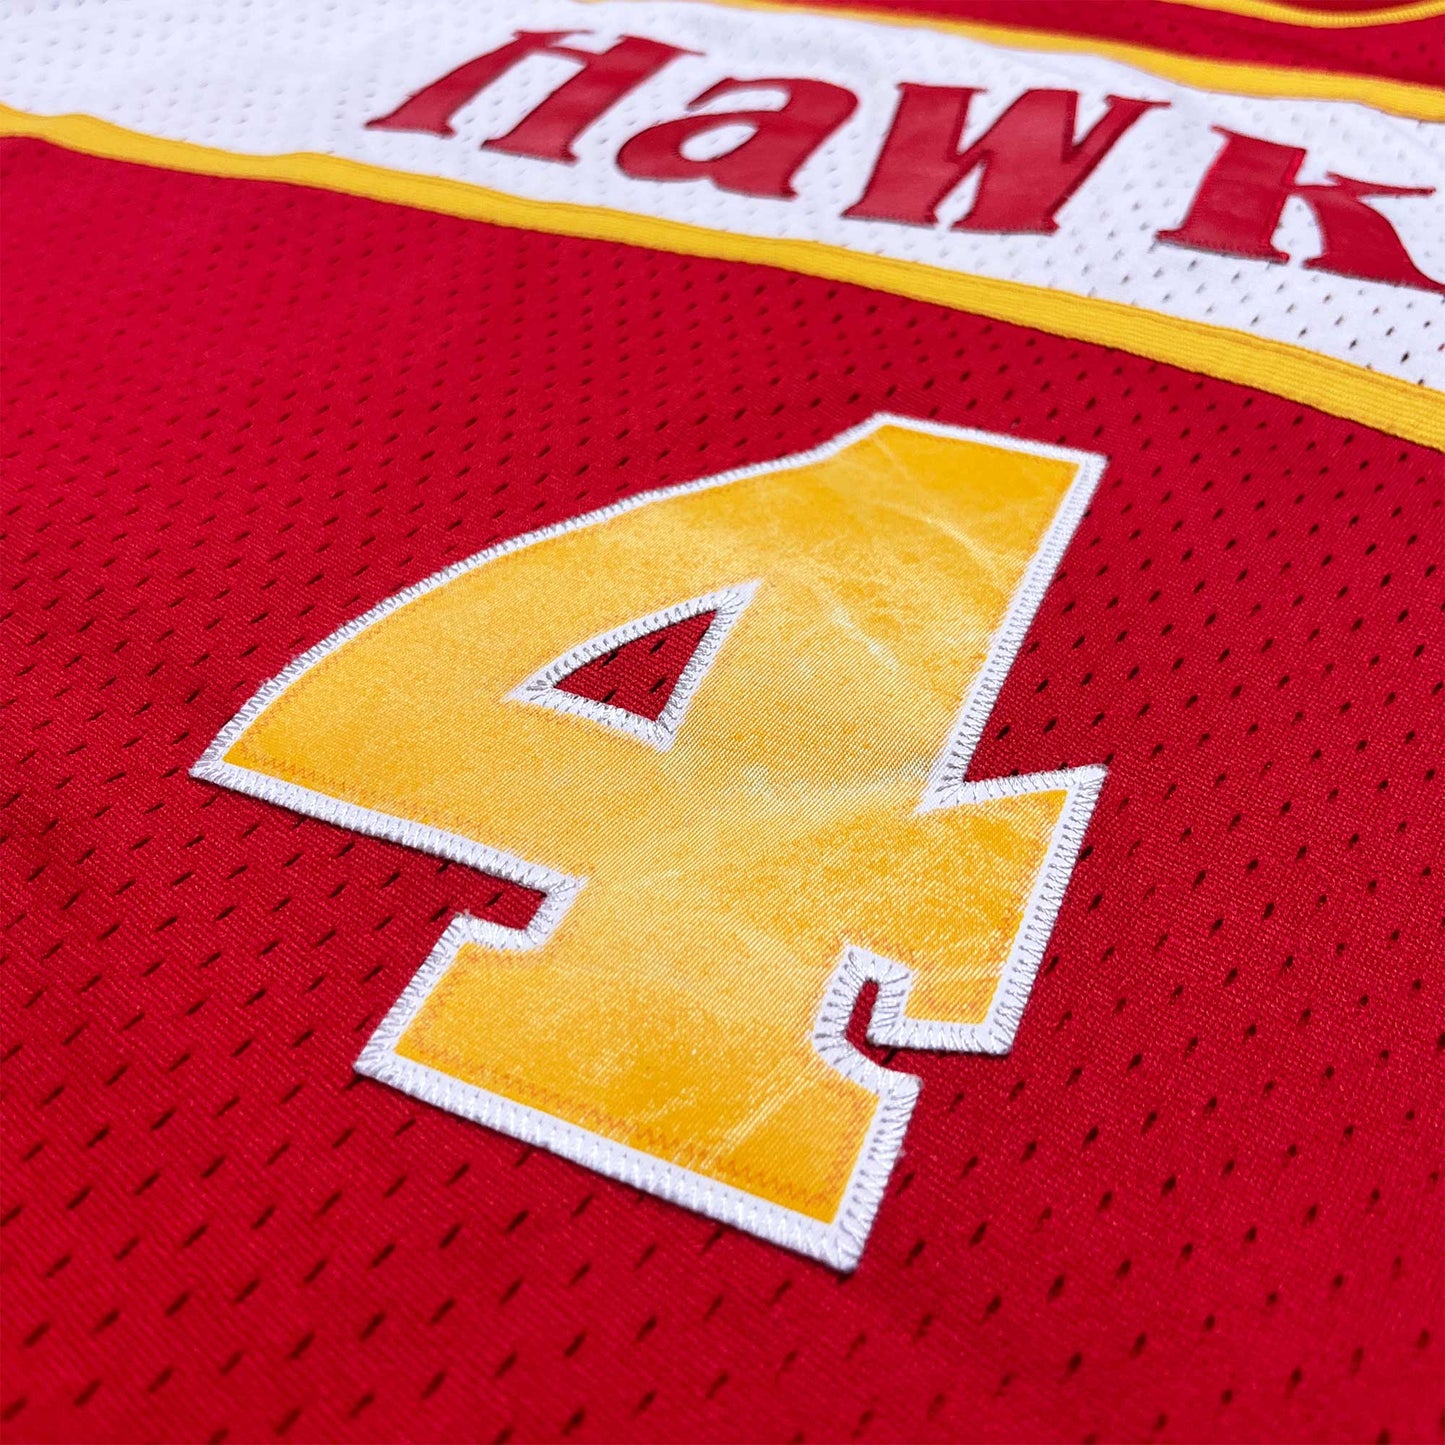 Atlanta Hawks - Spud Webb - Größe M - Adidas - NBA Trikot